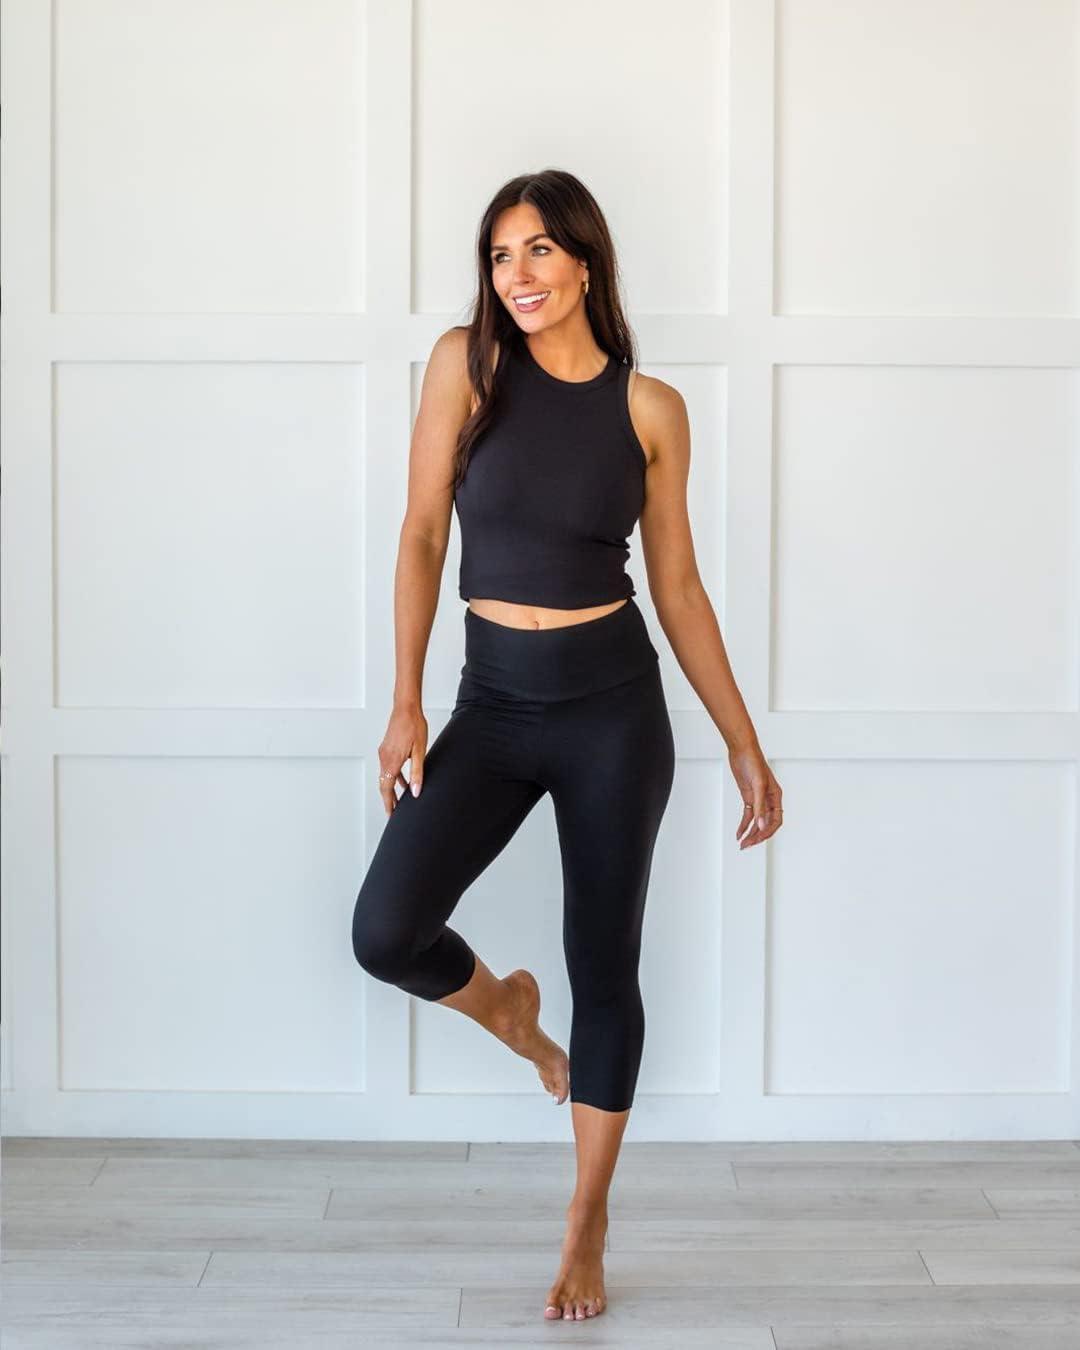 FULLSOFT 3 Pack Capri Leggings for Women - High Waisted Tummy Control Black Workout  Yoga Pants 1-3 Pack Capri Black black black Large-X-Large